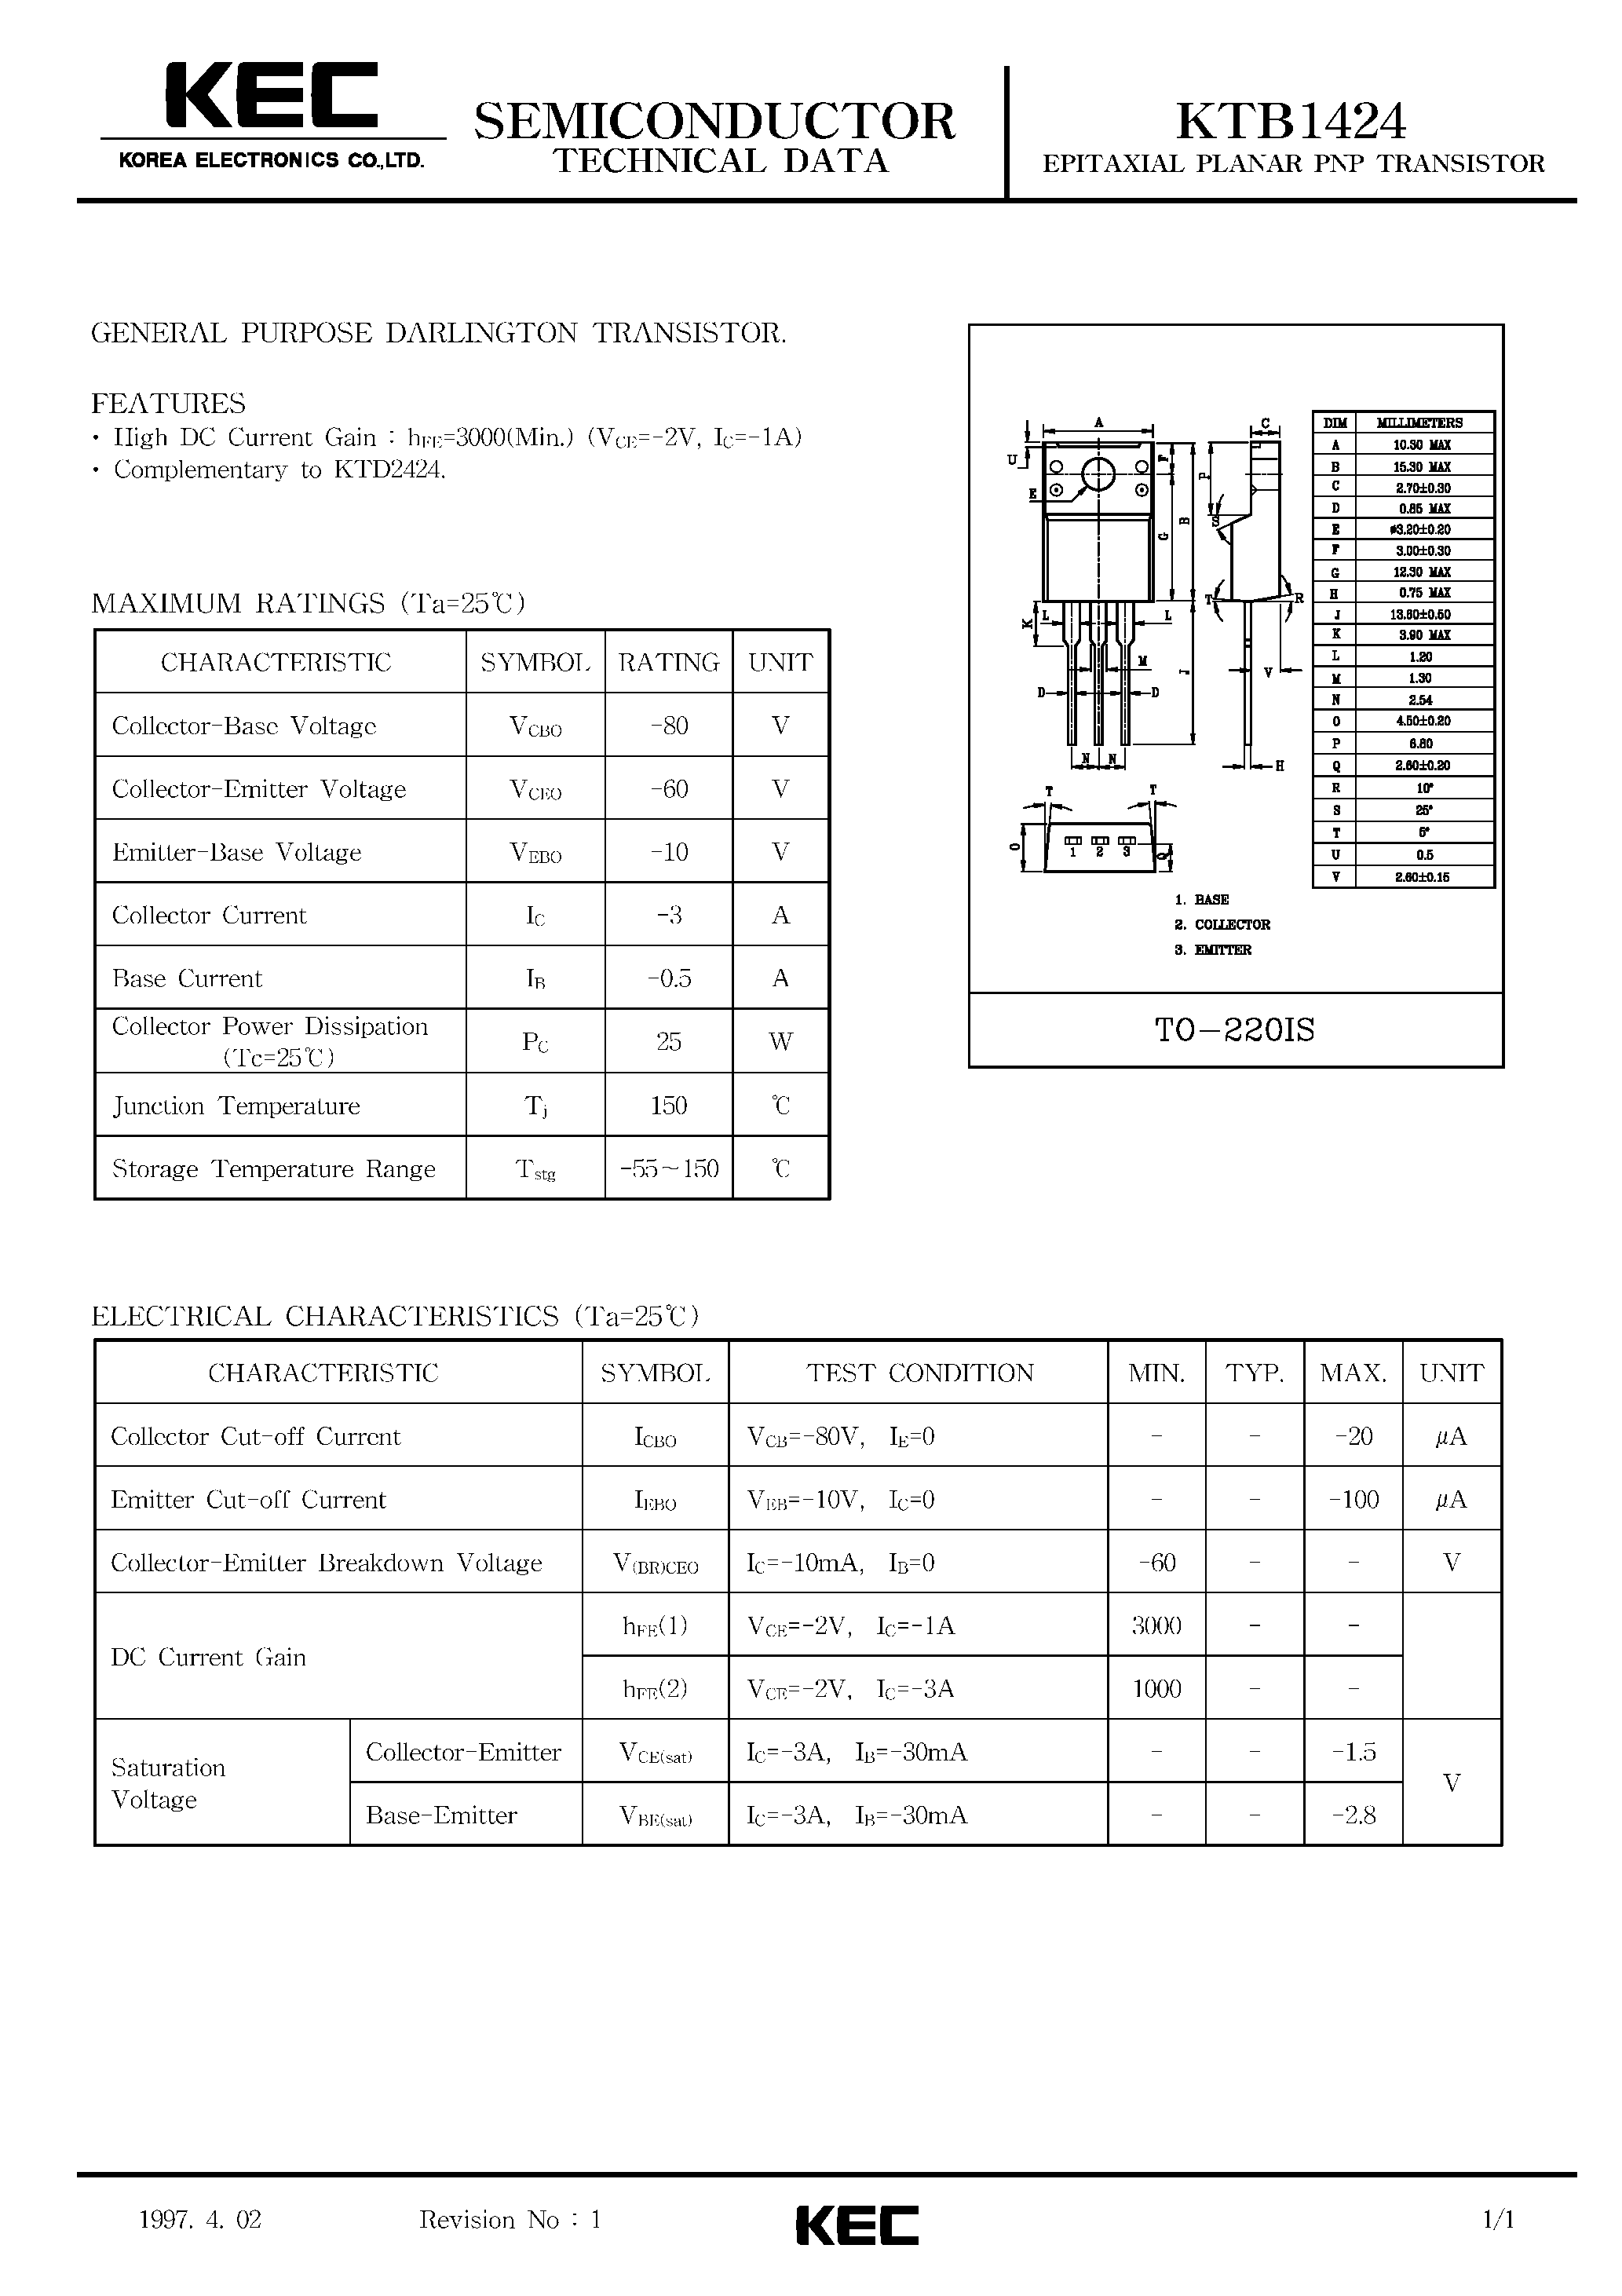 Datasheet KTB1424 - EPITAXIAL PLANAR PNP TRANSISTOR (GENERAL PURPOSE DARLING TON TRANSISTOR) page 1